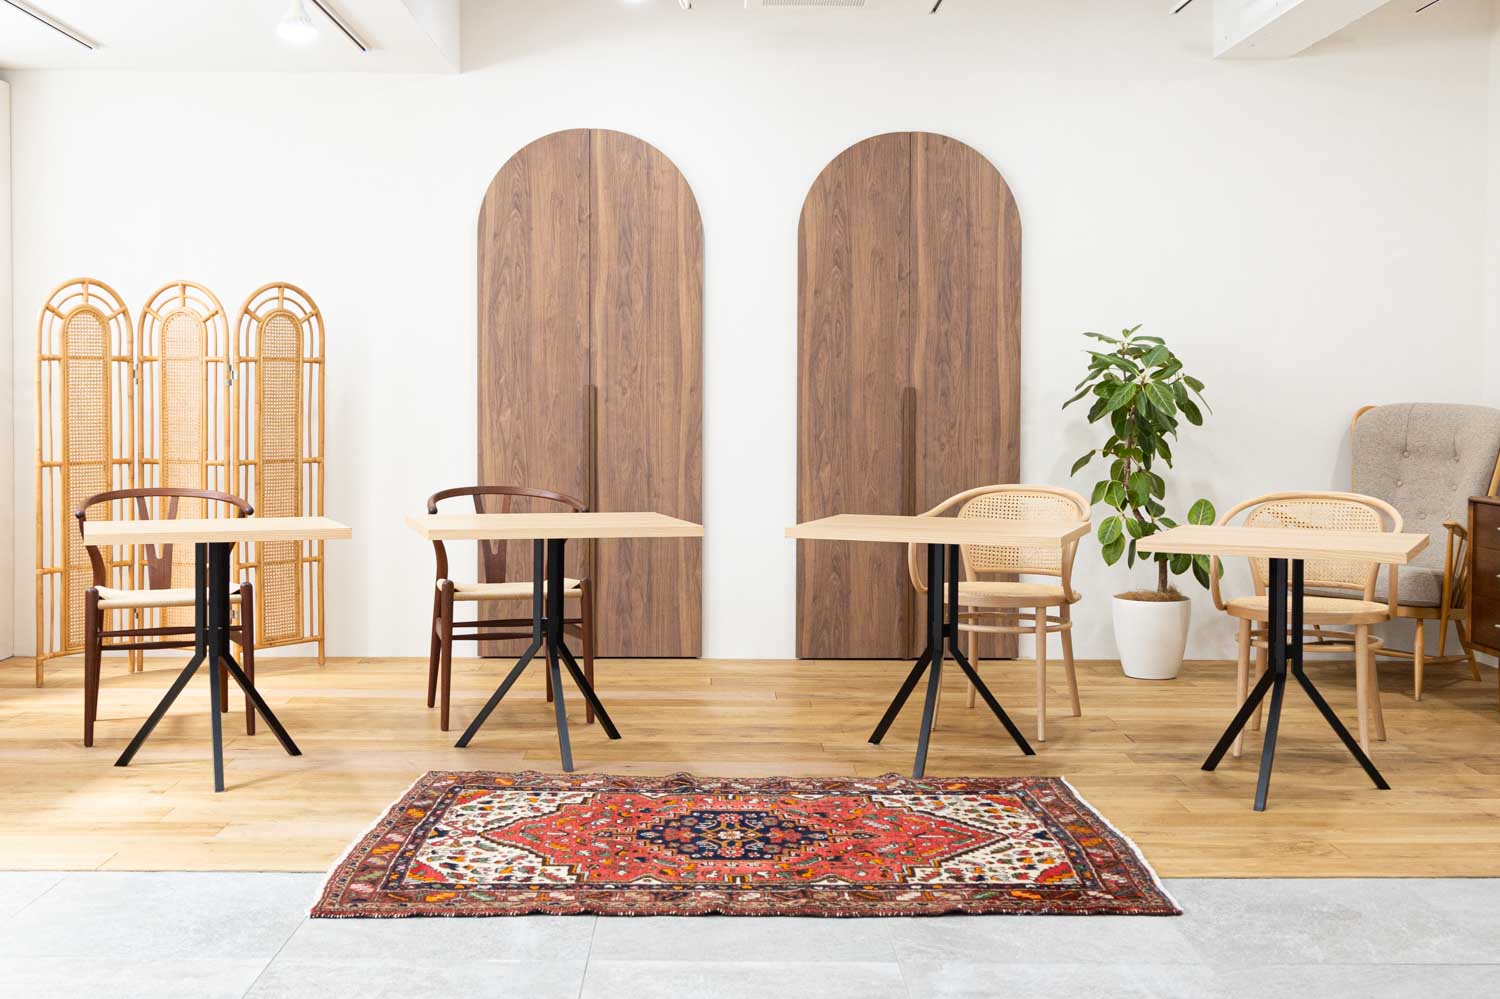 木製ドア2枚の前に、テーブルと椅子のセットが4つ配置された写真